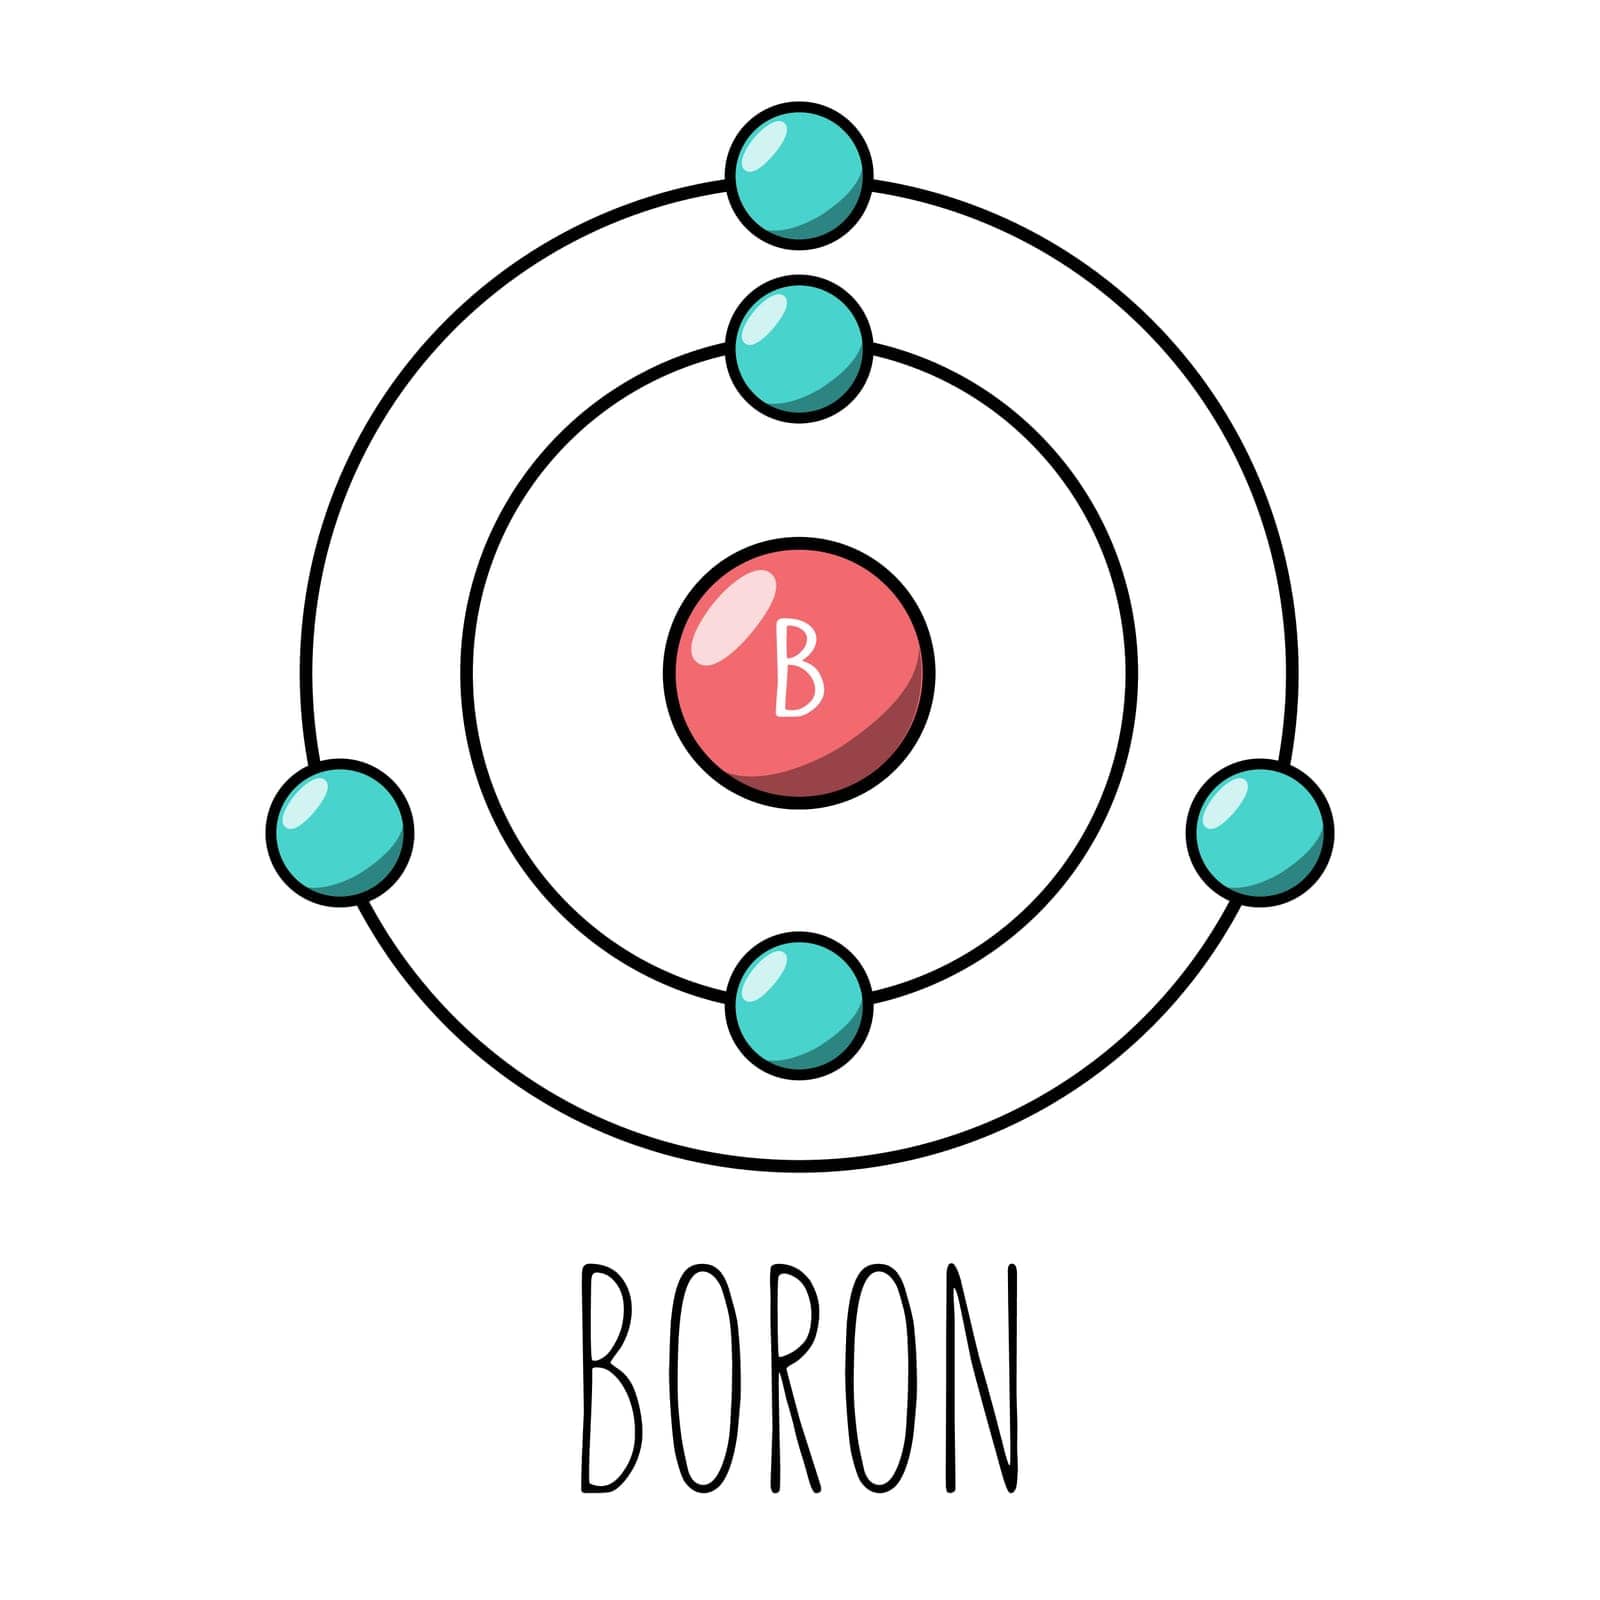 Boron atom Bohr model. Cartoon style. Vector editable